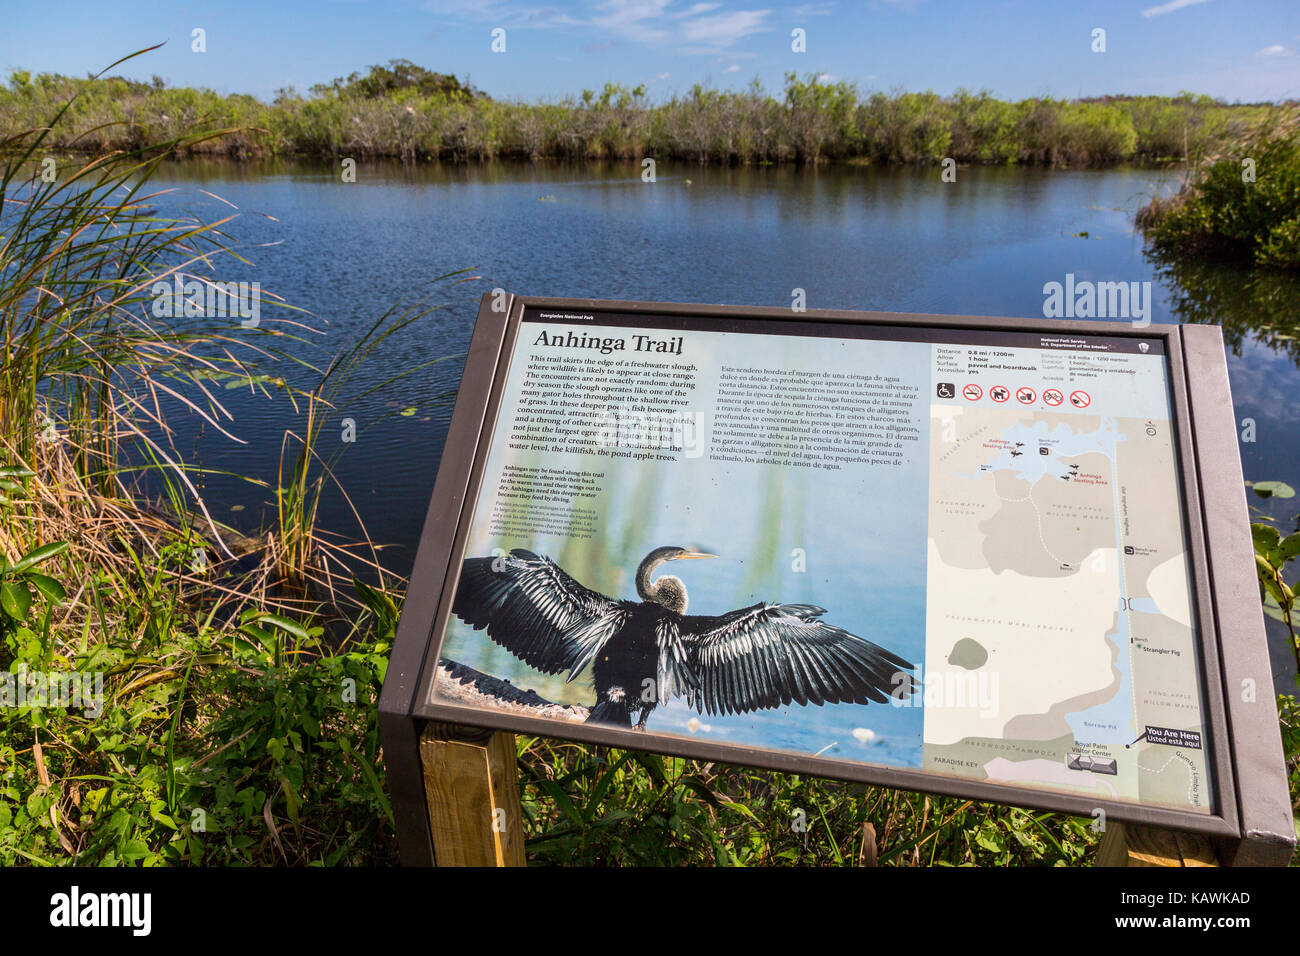 Le Parc National des Everglades, en Floride. Panneau d'information sur l'anhinga Trail. Banque D'Images